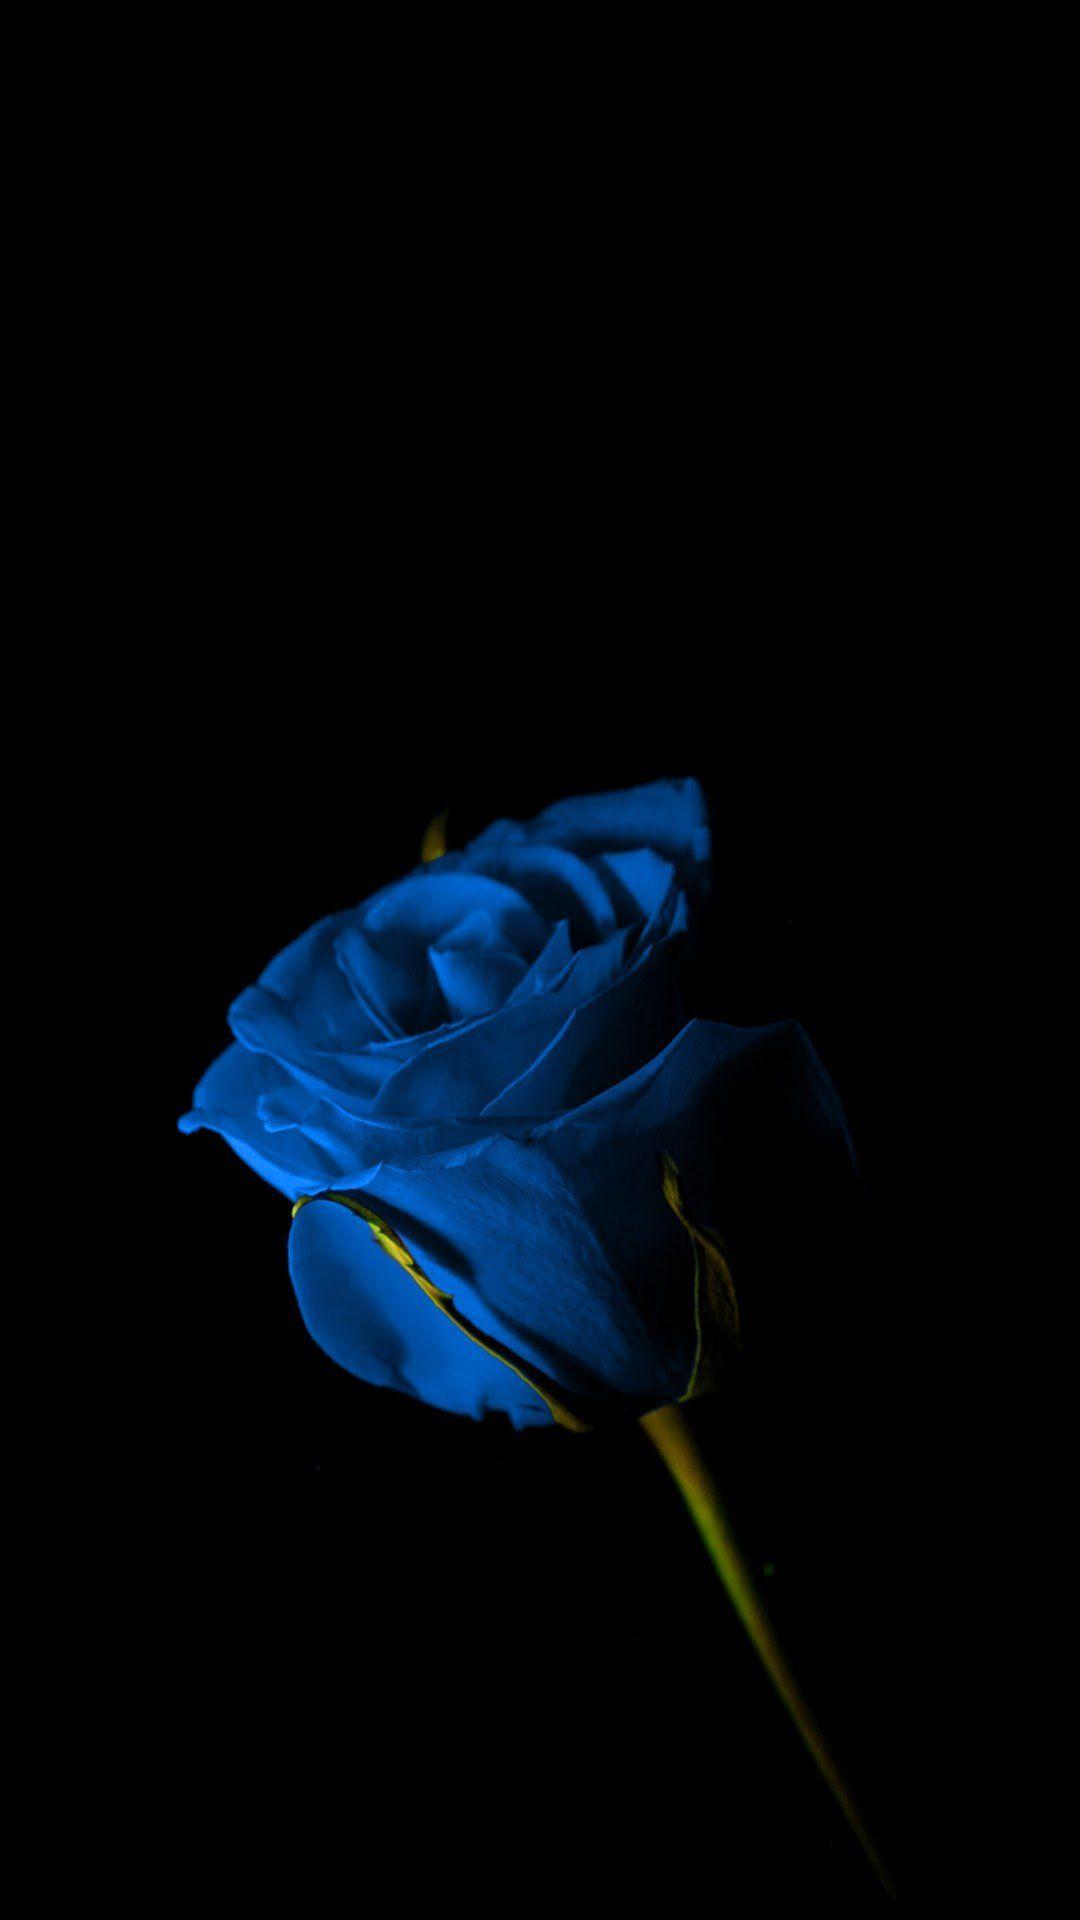 Amoled Wallpaper 13. Blue roses wallpaper, Blue flower